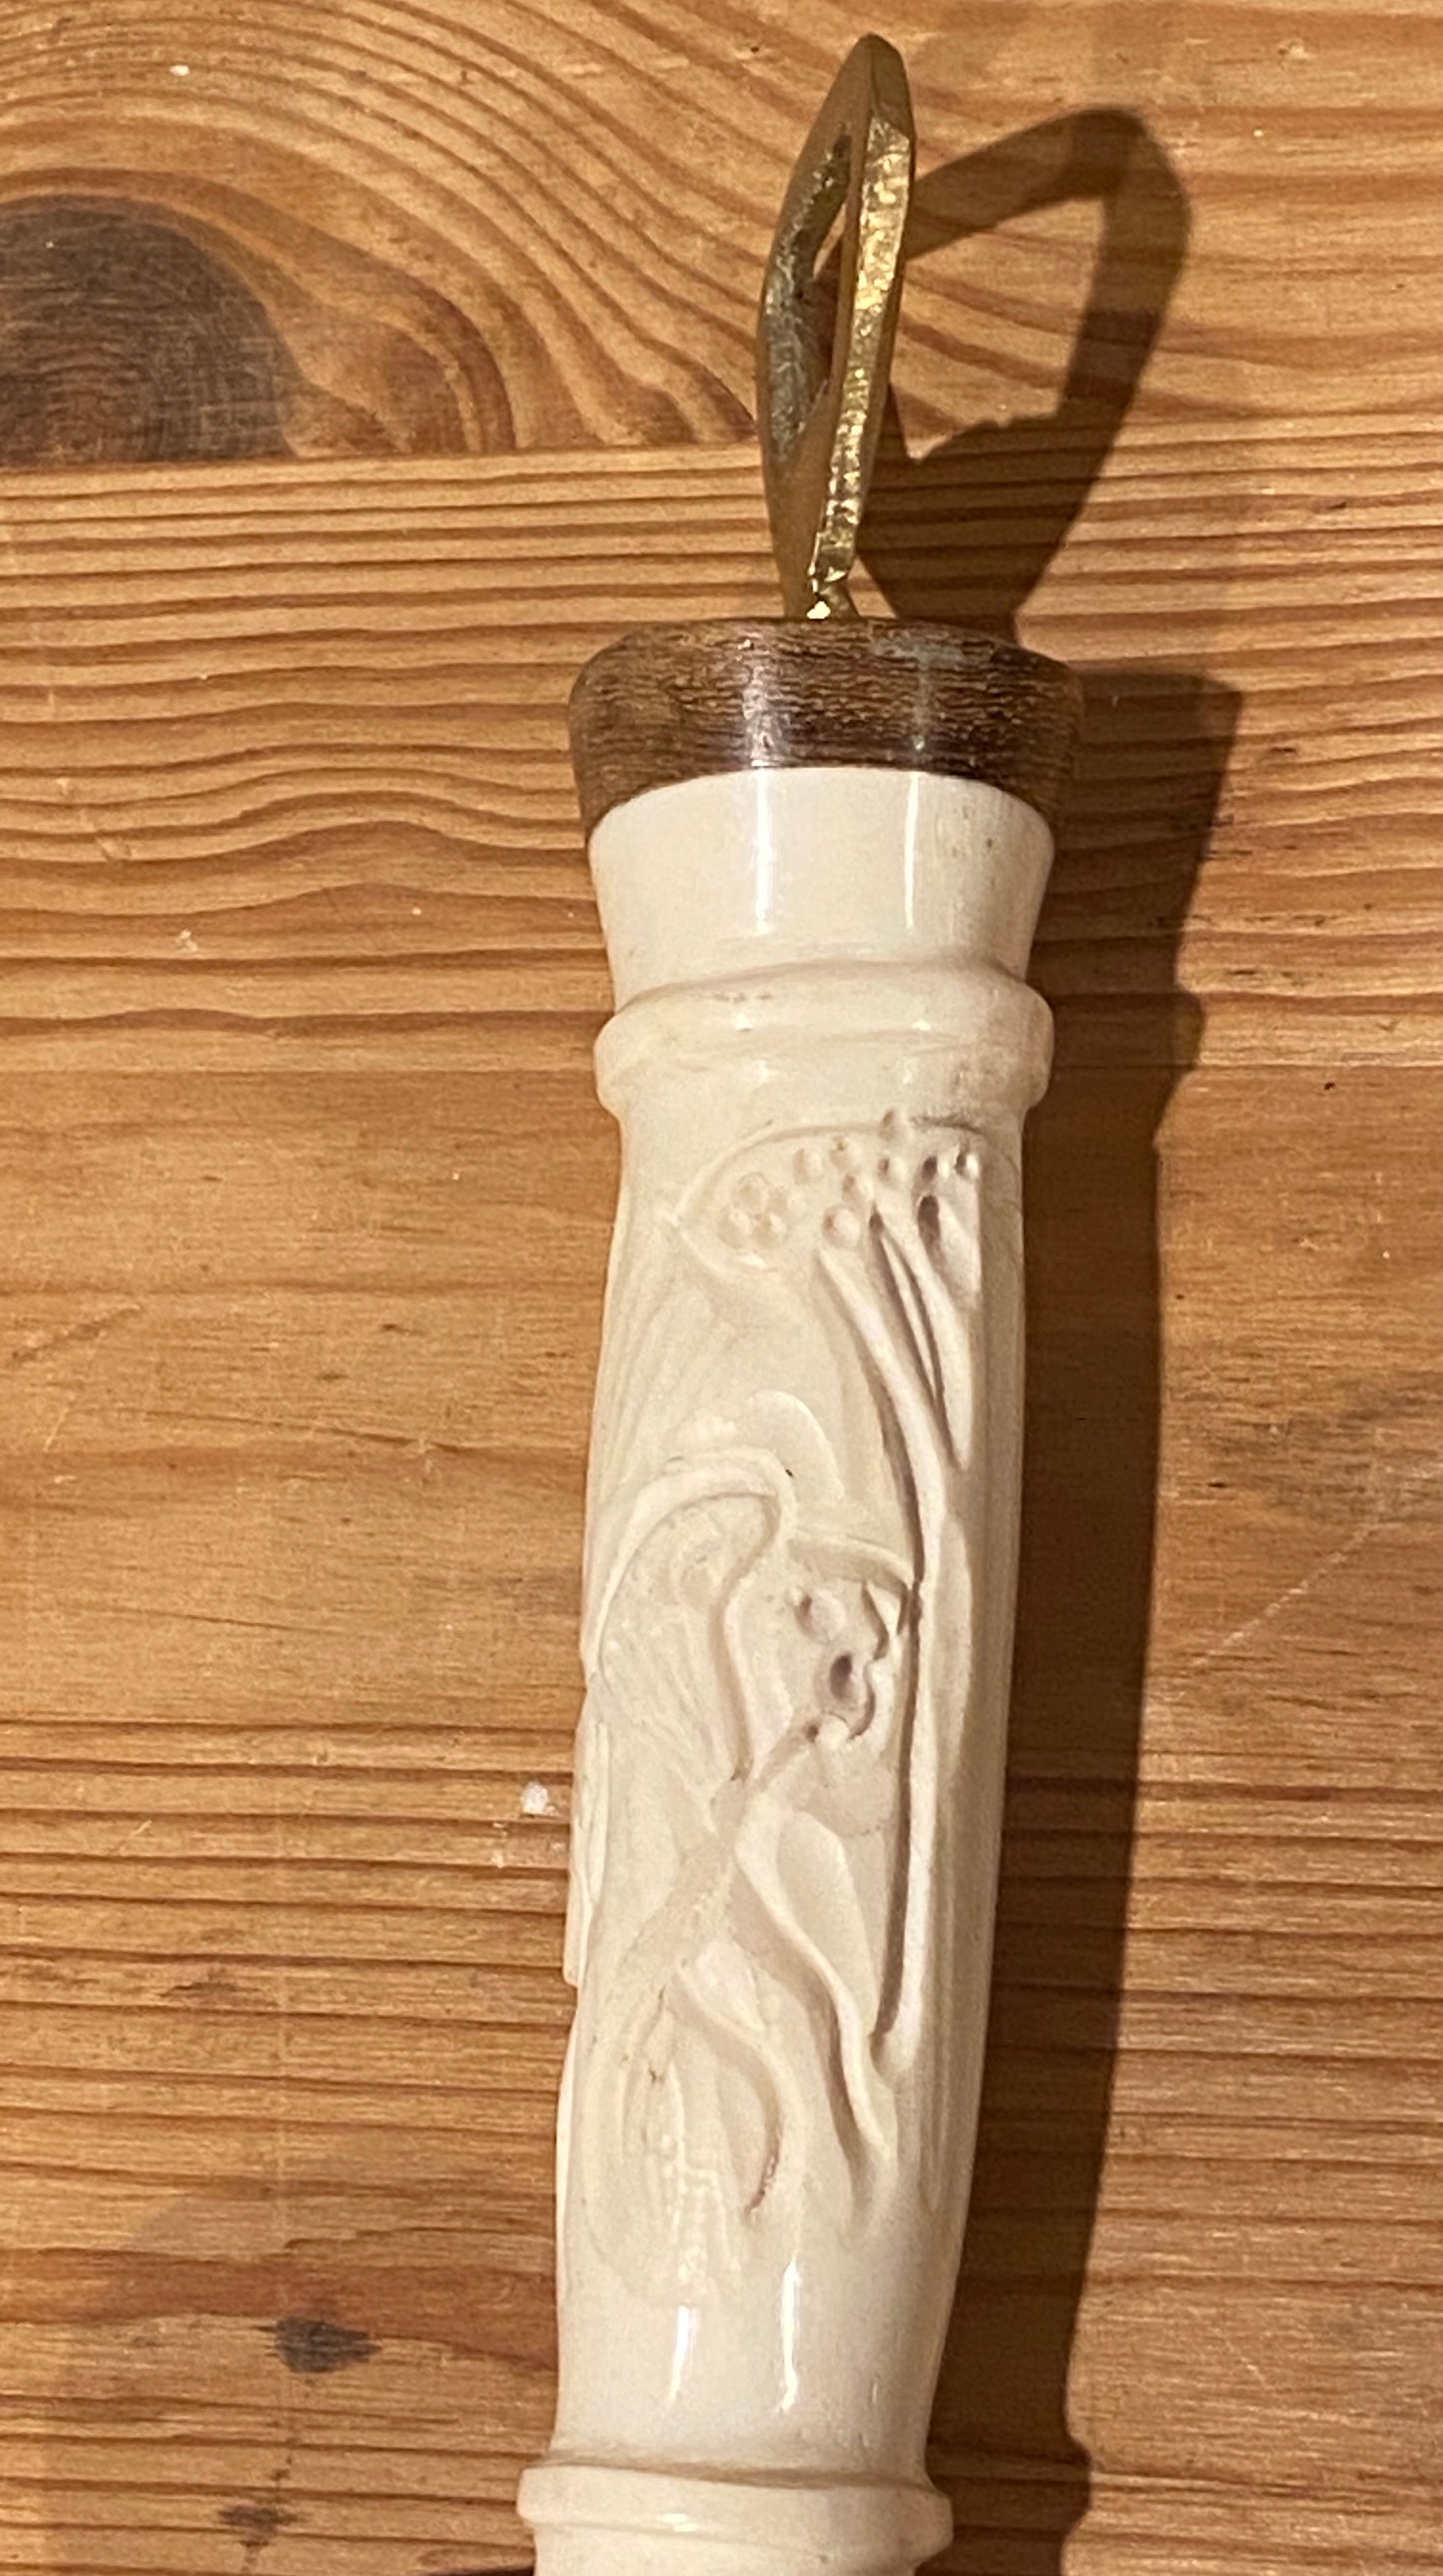 Carved Animal Bottle Opener